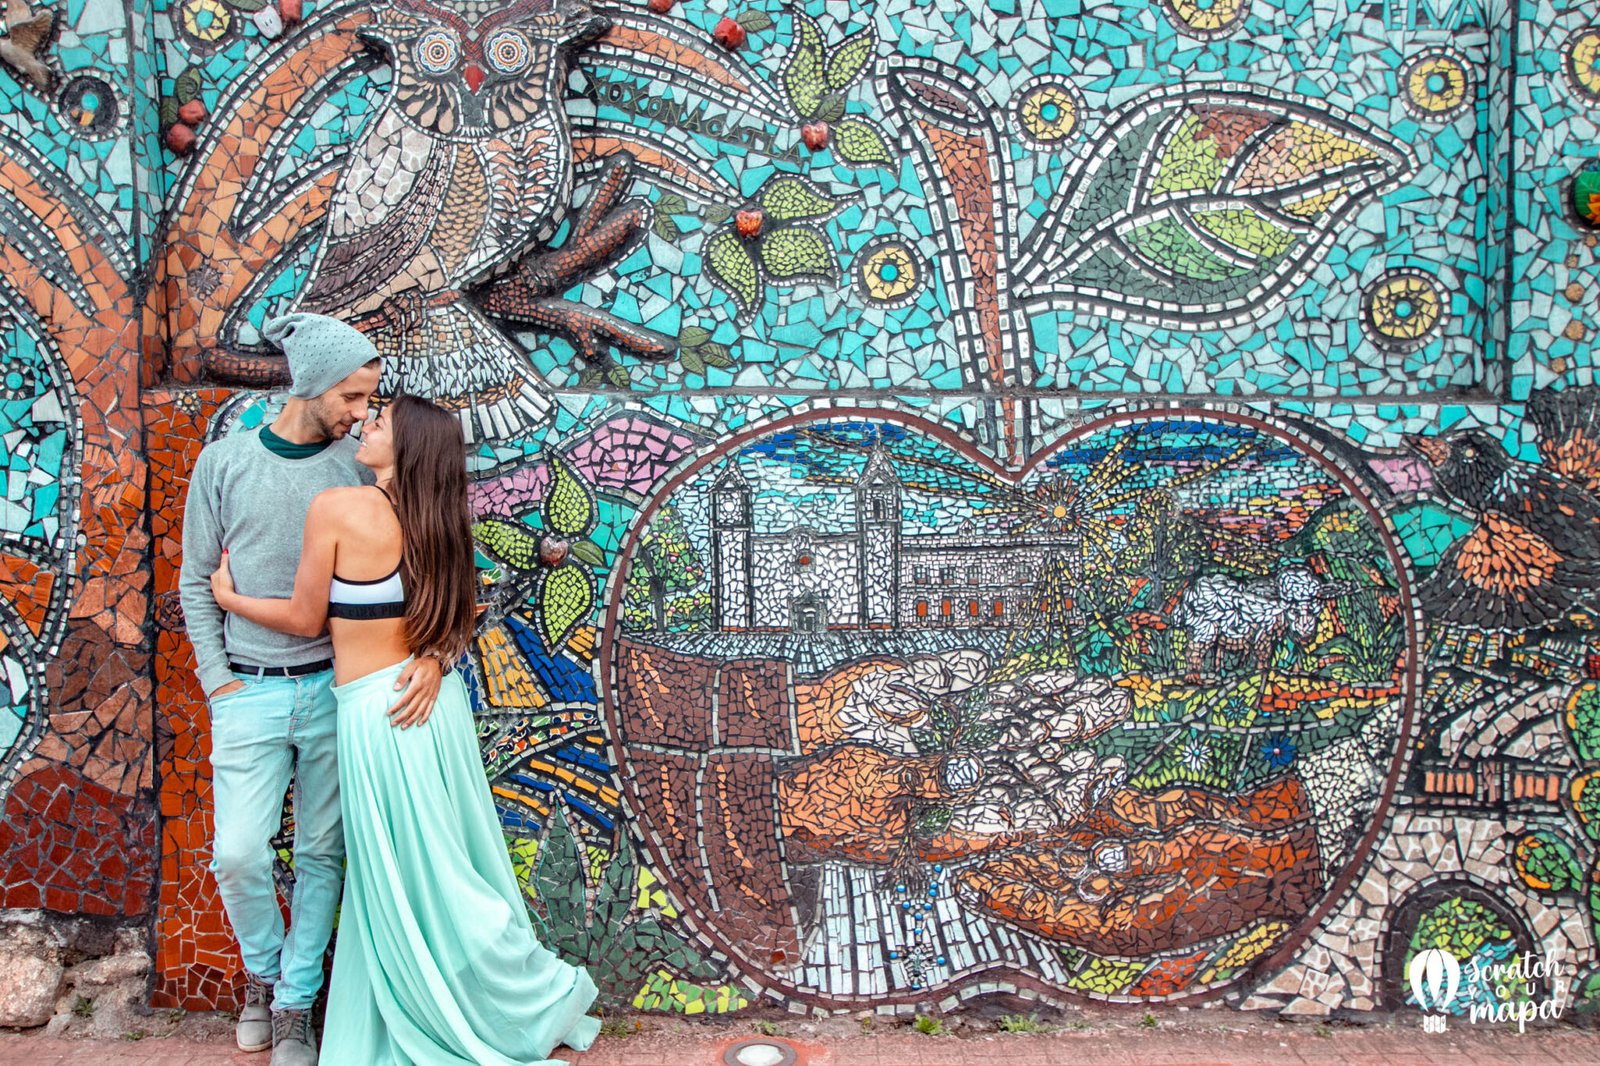 Mural Zacatlan, pueblos magicos in Mexico